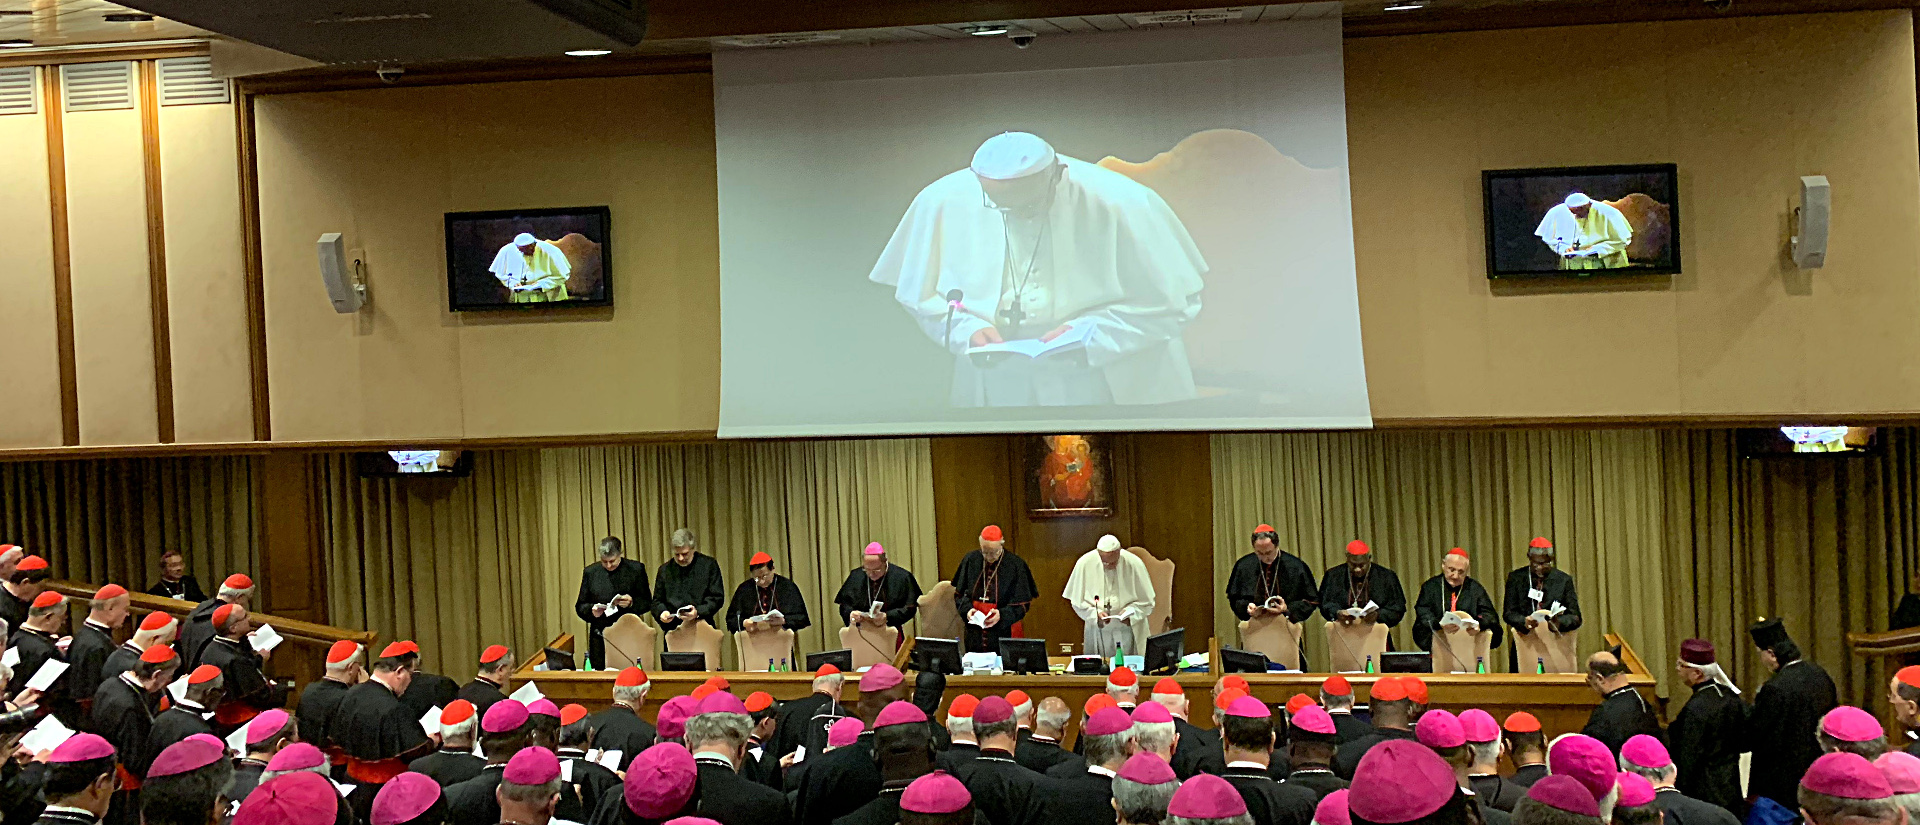 Gebet zu Beginn einer Sitzung der Jugendsynode im Vatikan